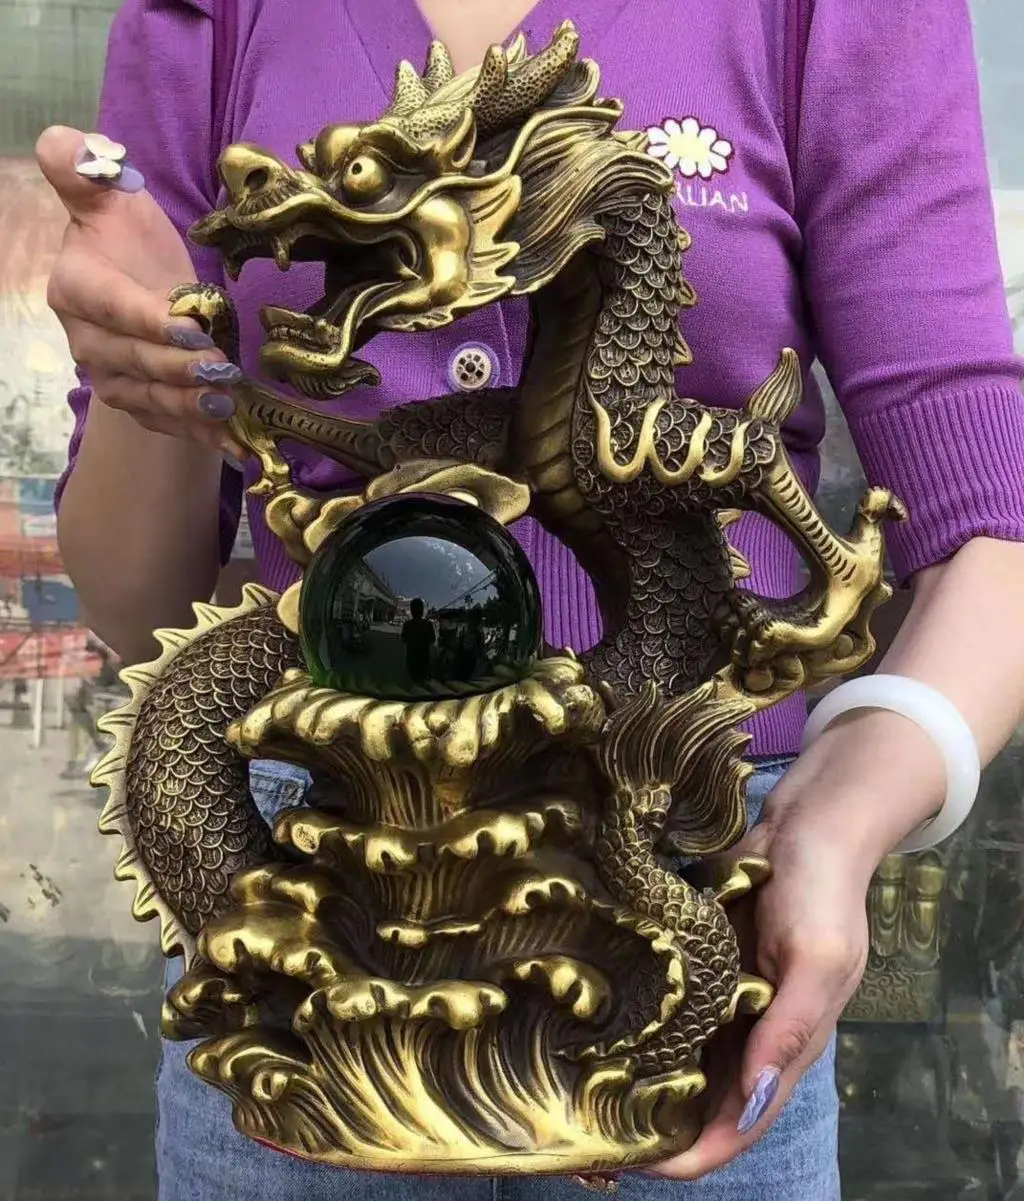 

Lage Good LUCK Auspicious wealth dragon Crystal ball Luck Feng Shui talisman brass Sculpture statue Home office Decor ART